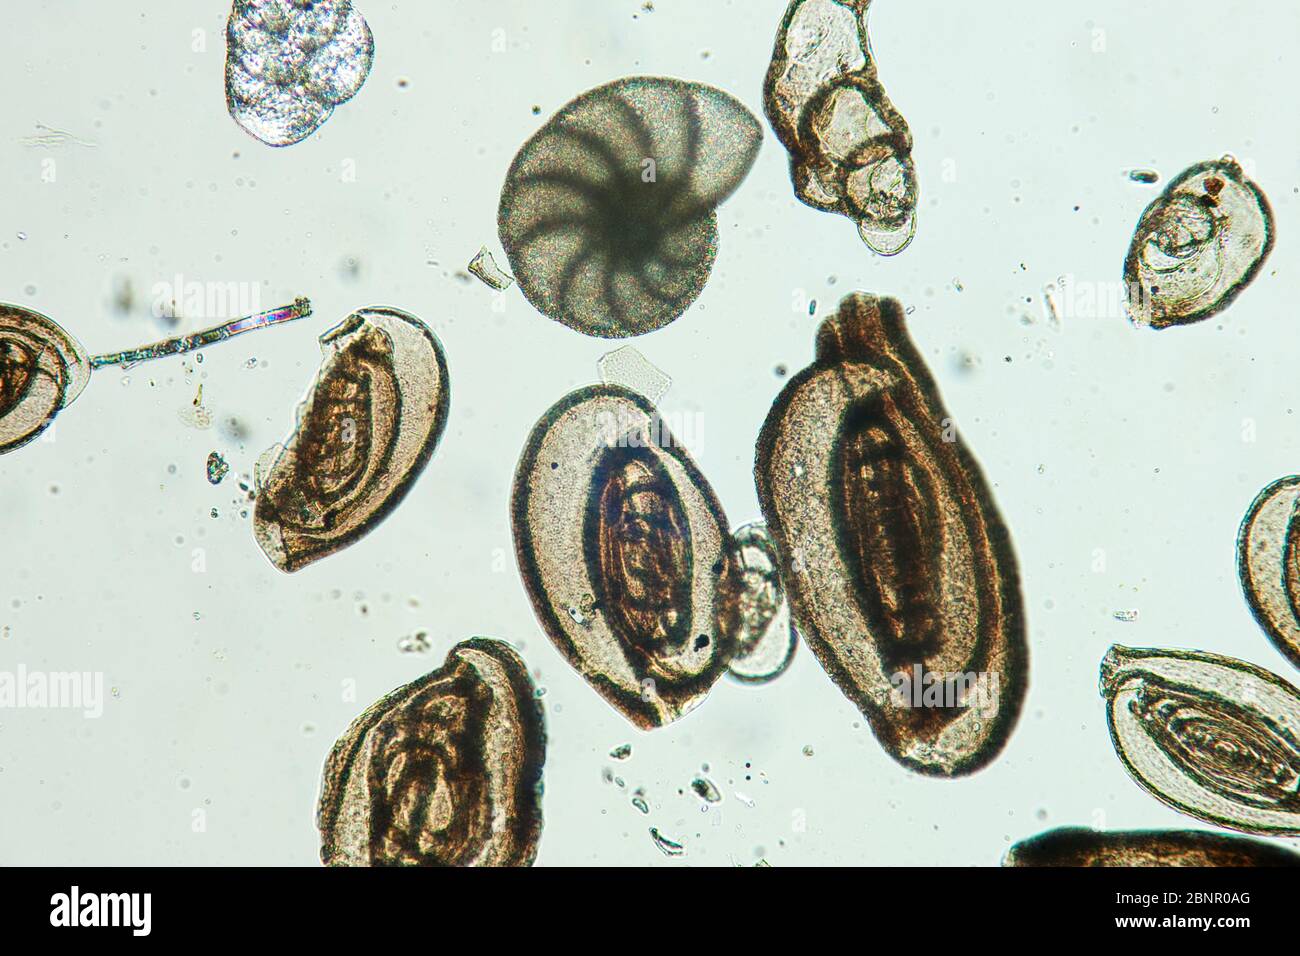 Foraminíferos protistas ameboides del Mar Adriático, fotomicrografía en luz polarizada simple Foto de stock